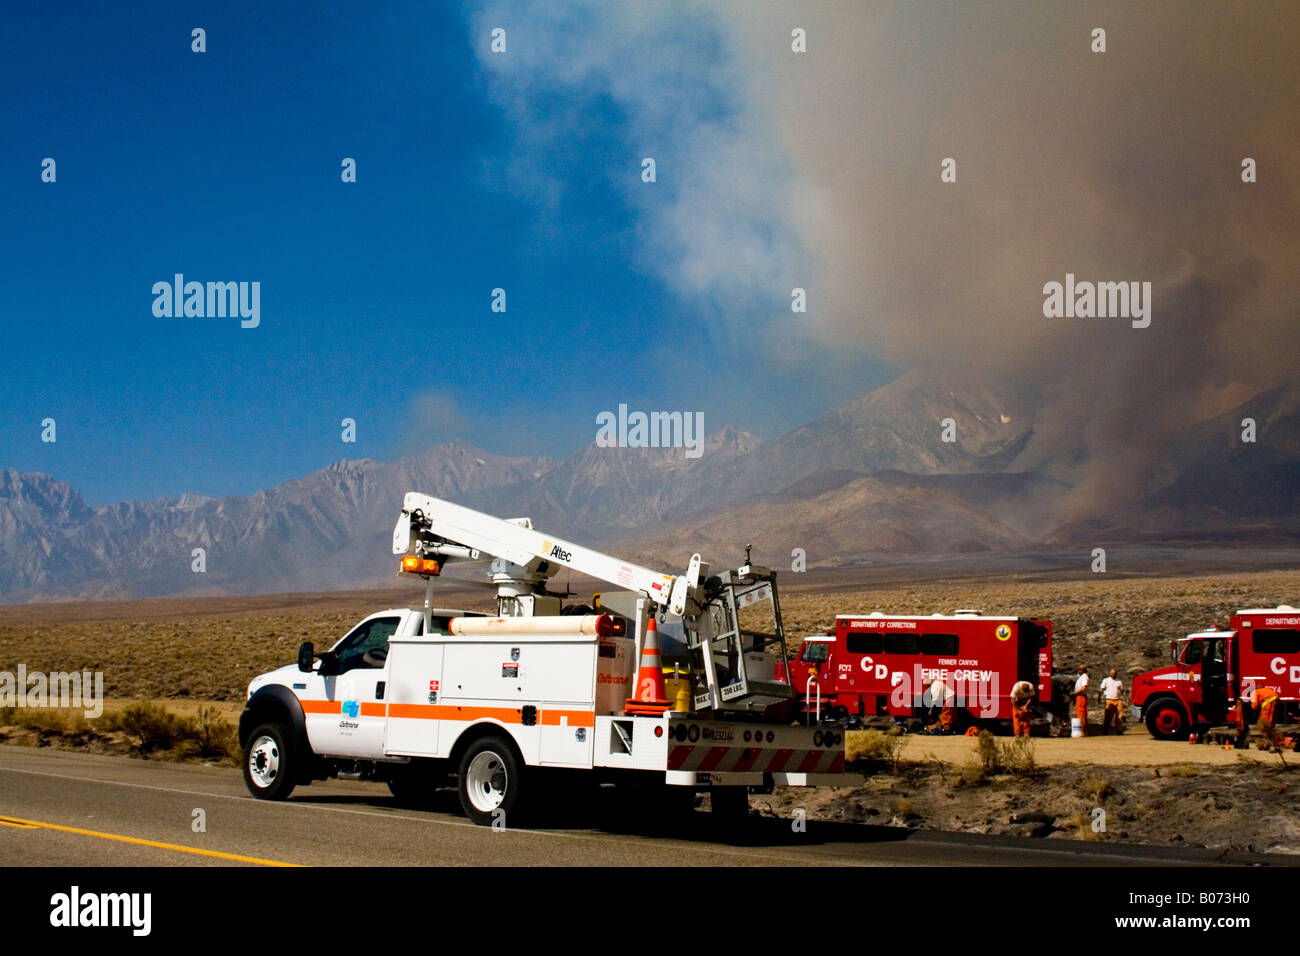 Réparation d'alimentation chariot sur l'autoroute 395 à l'est de la Sierra Nevada Mts. Après un violent incendie de forêt Juillet 2007 Banque D'Images